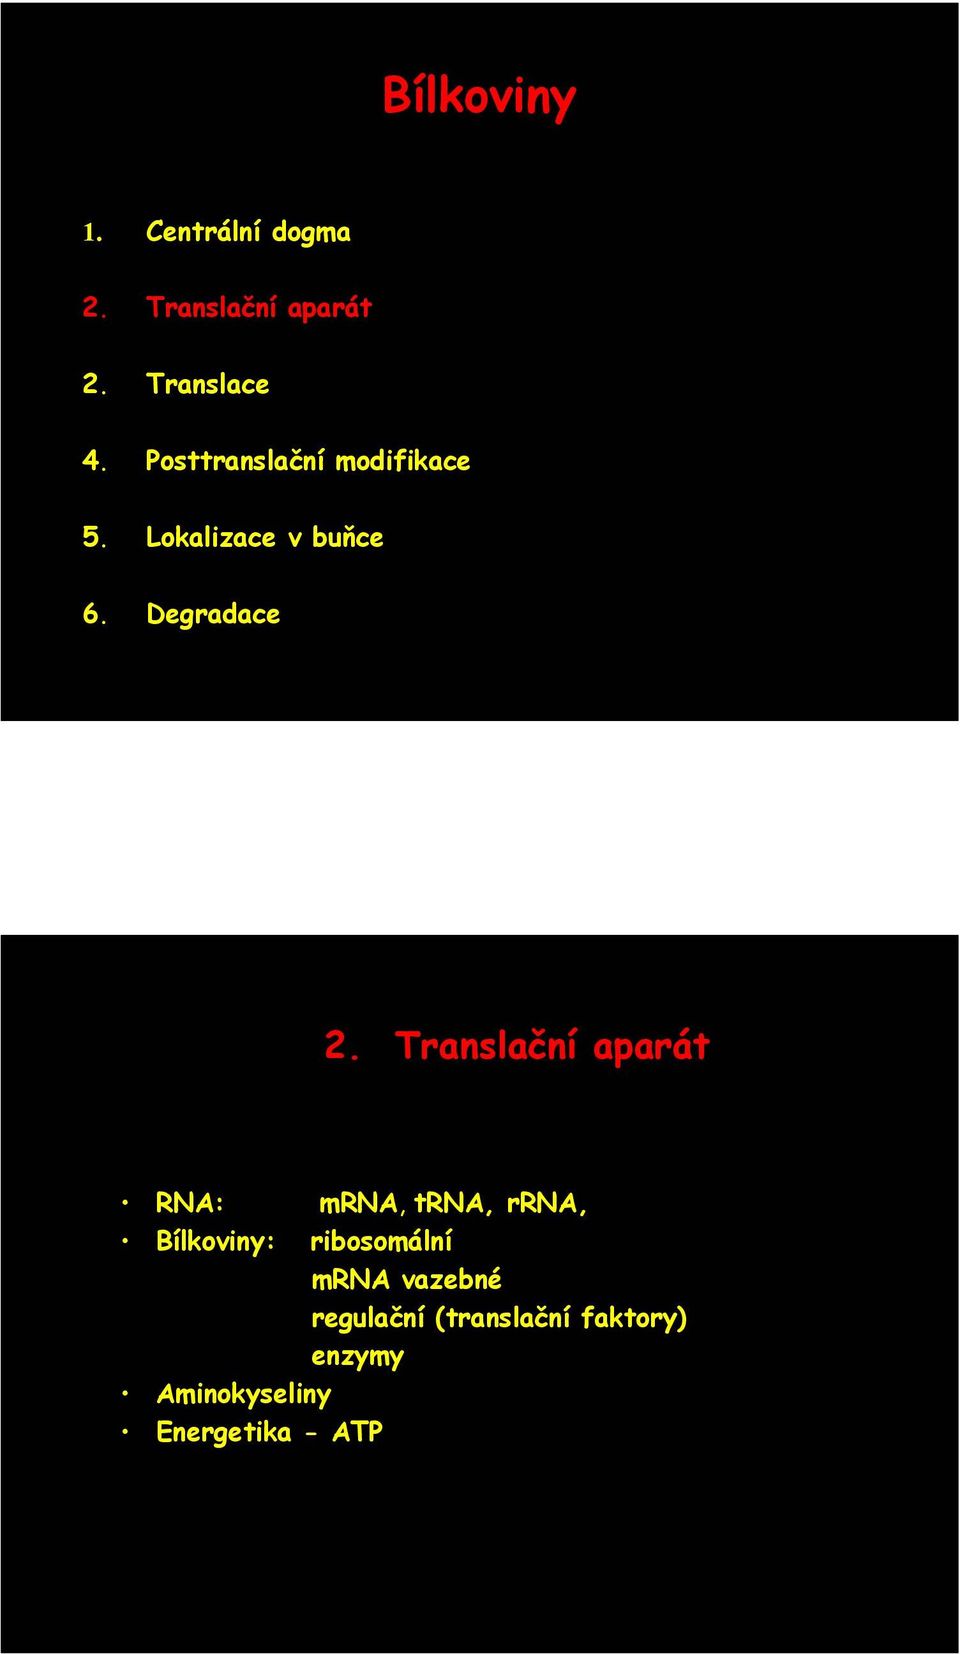 Translační aparát RNA: mrna, trna, rrna, Bílkoviny: ribosomální mrna